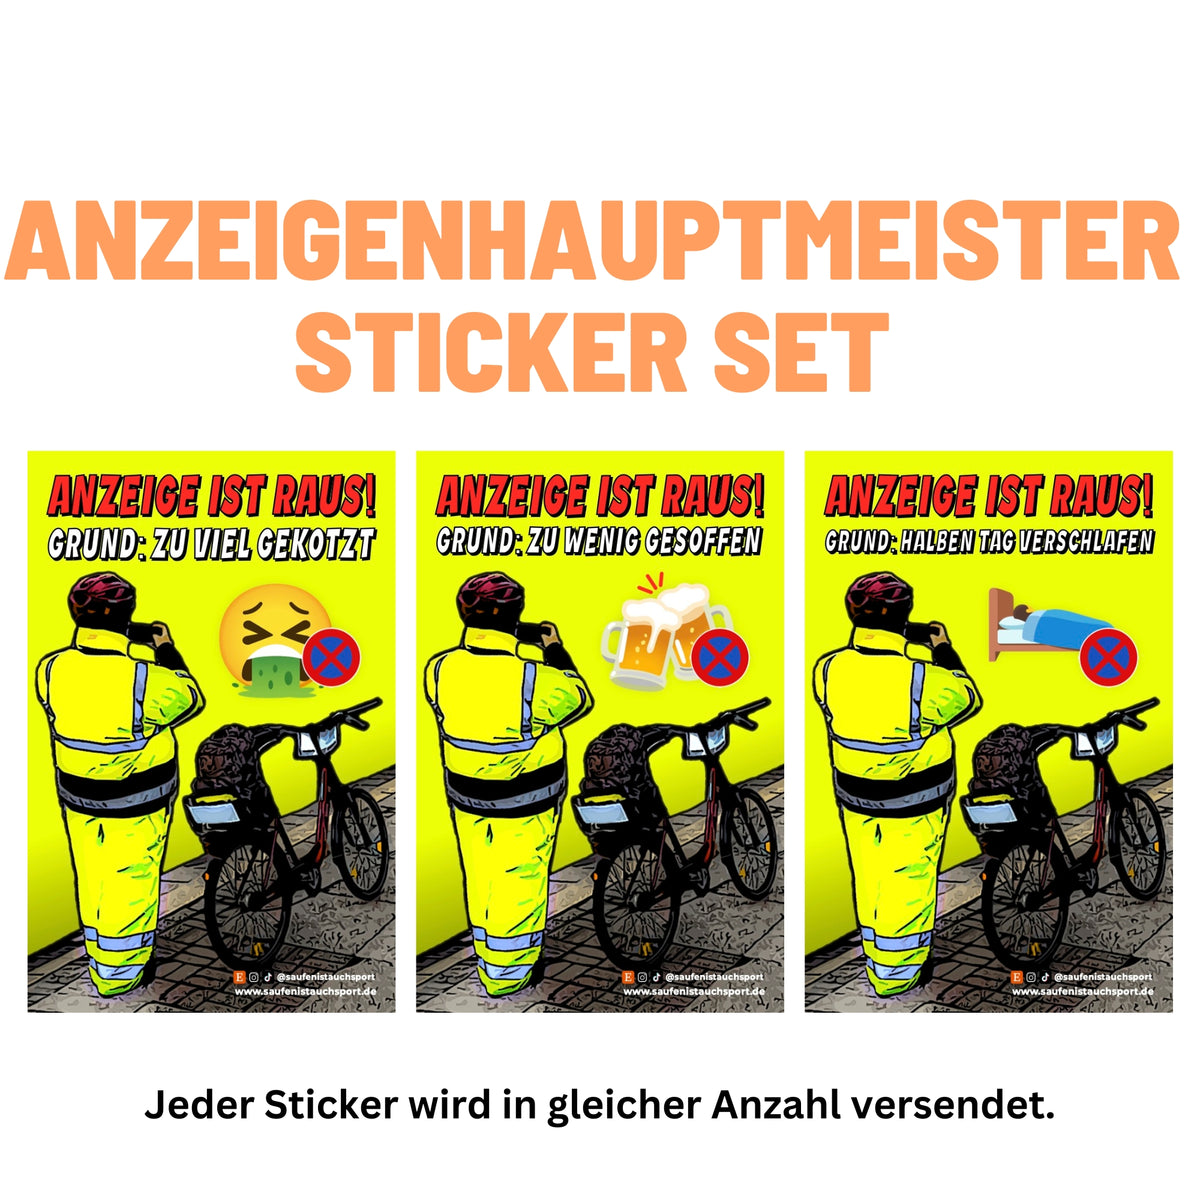 Anzeigensaufmeister Sticker Set (Anzeigenhauptmeister)